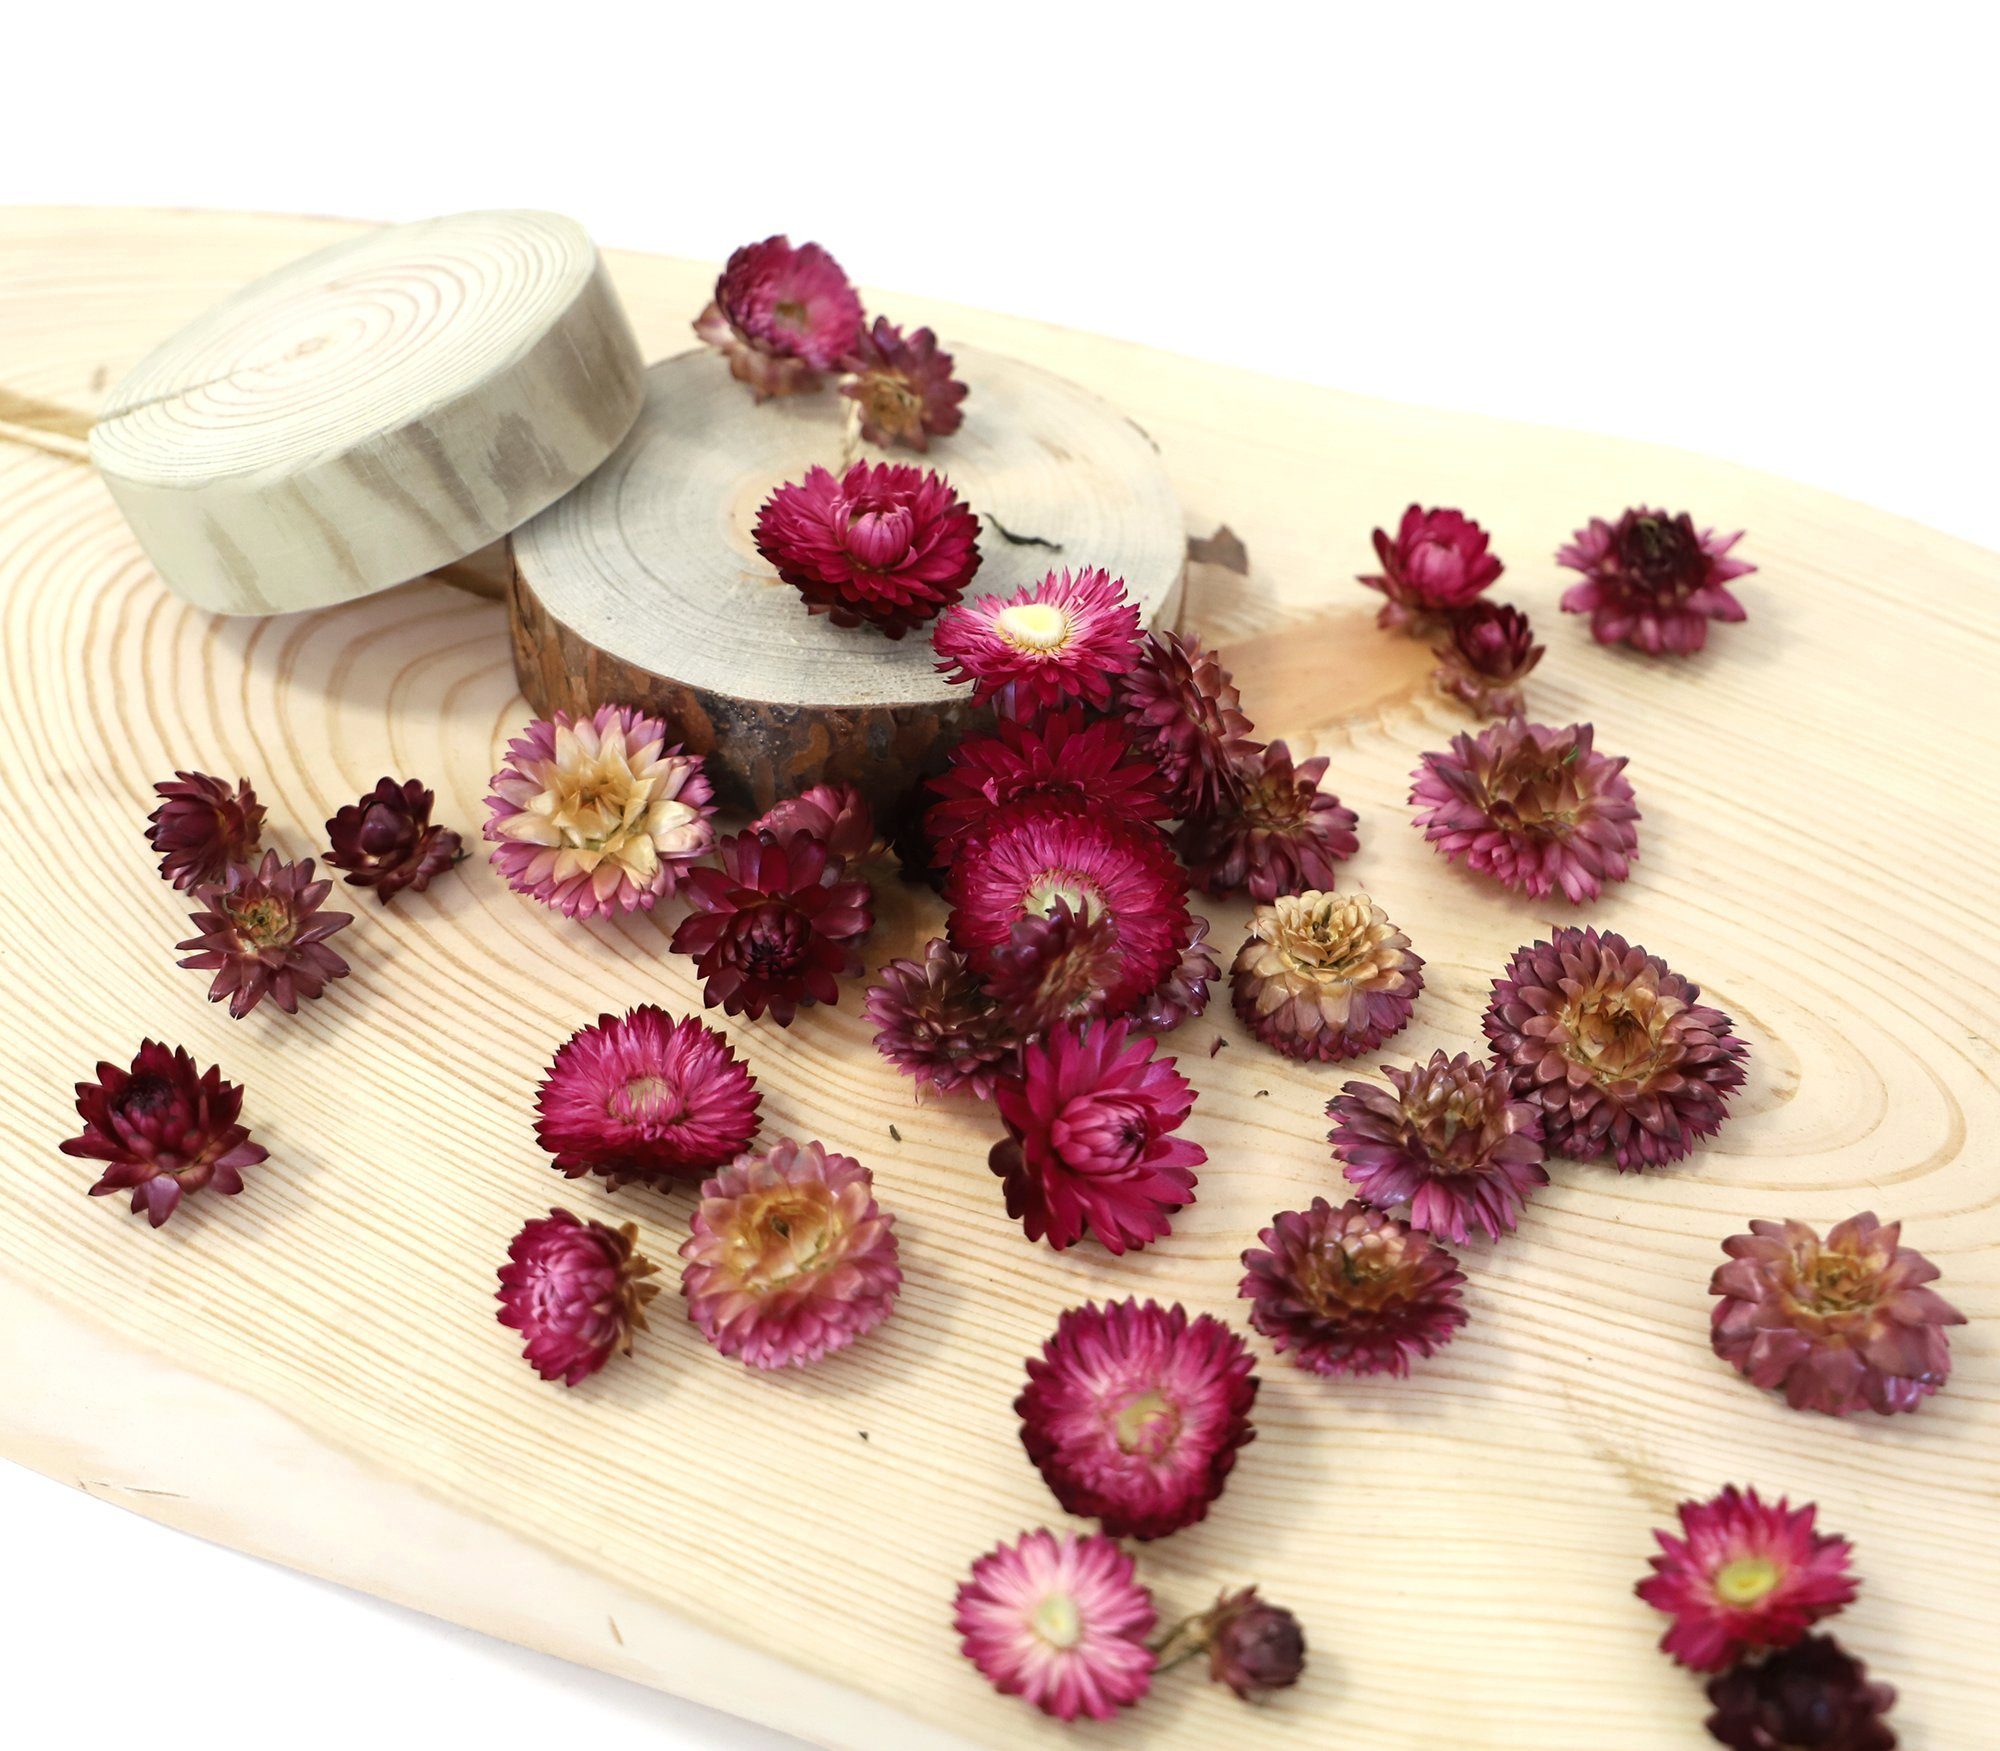 Helichrysum Kunstharz.Art farblich - sortiert Trockenblume Strohblumenköpfe getrocknet: gemischt oder Rosa,